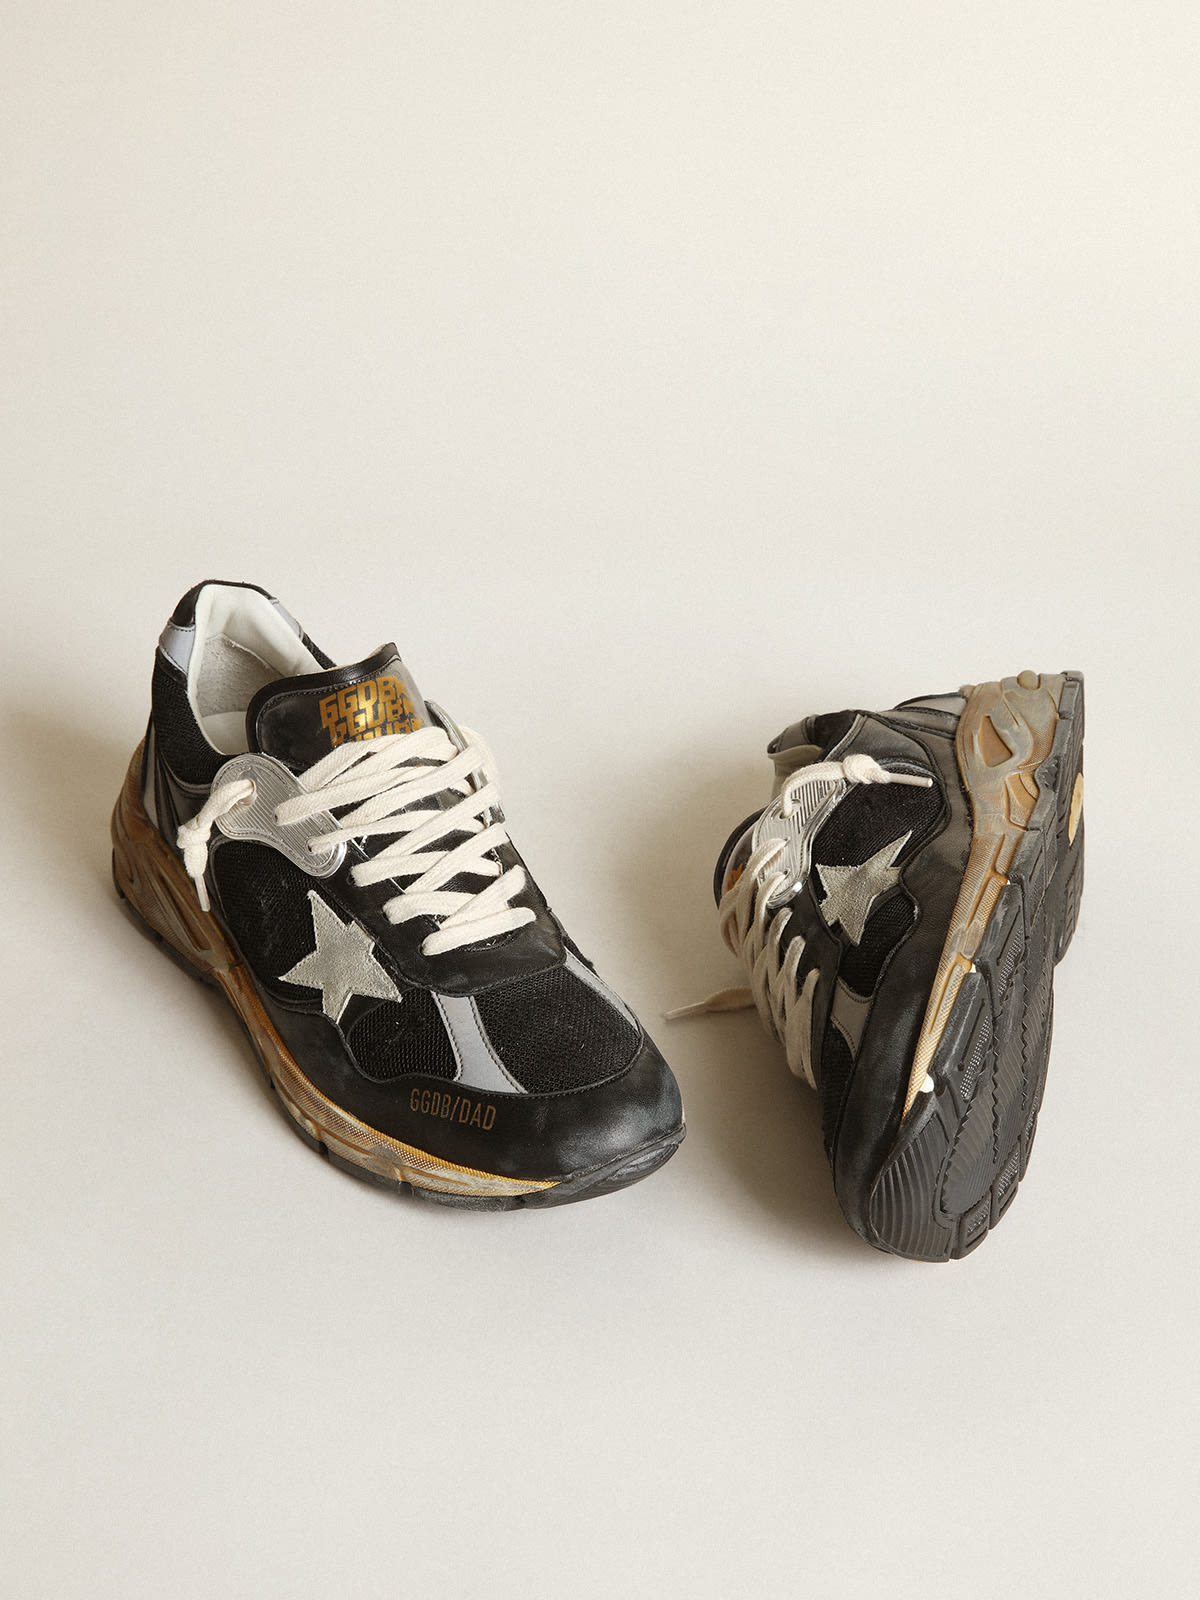 Golden Goose - Sneakers Dad-Star pour femme en résille et en cuir nappa de couleur noire avec étoile en daim gris froid in 